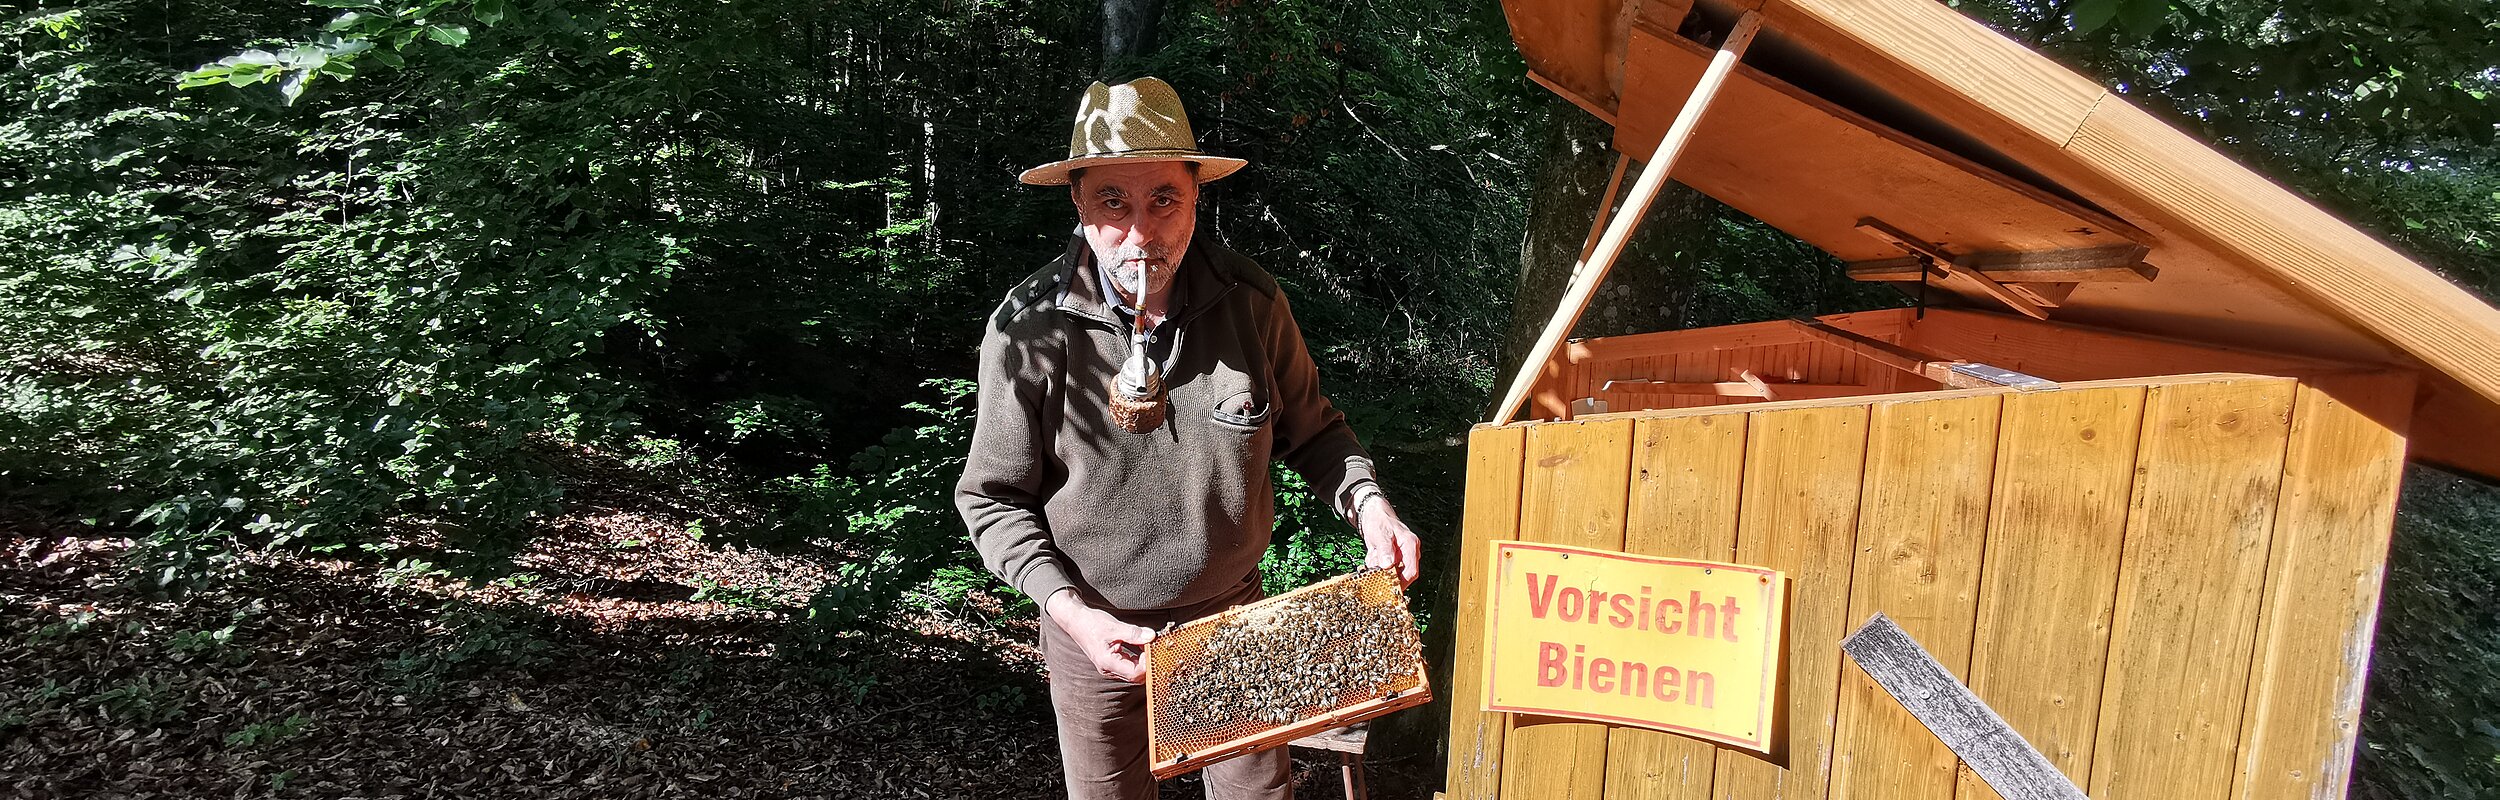 Kipfenberger Bienenstand der Bayerischen Staatsforsten